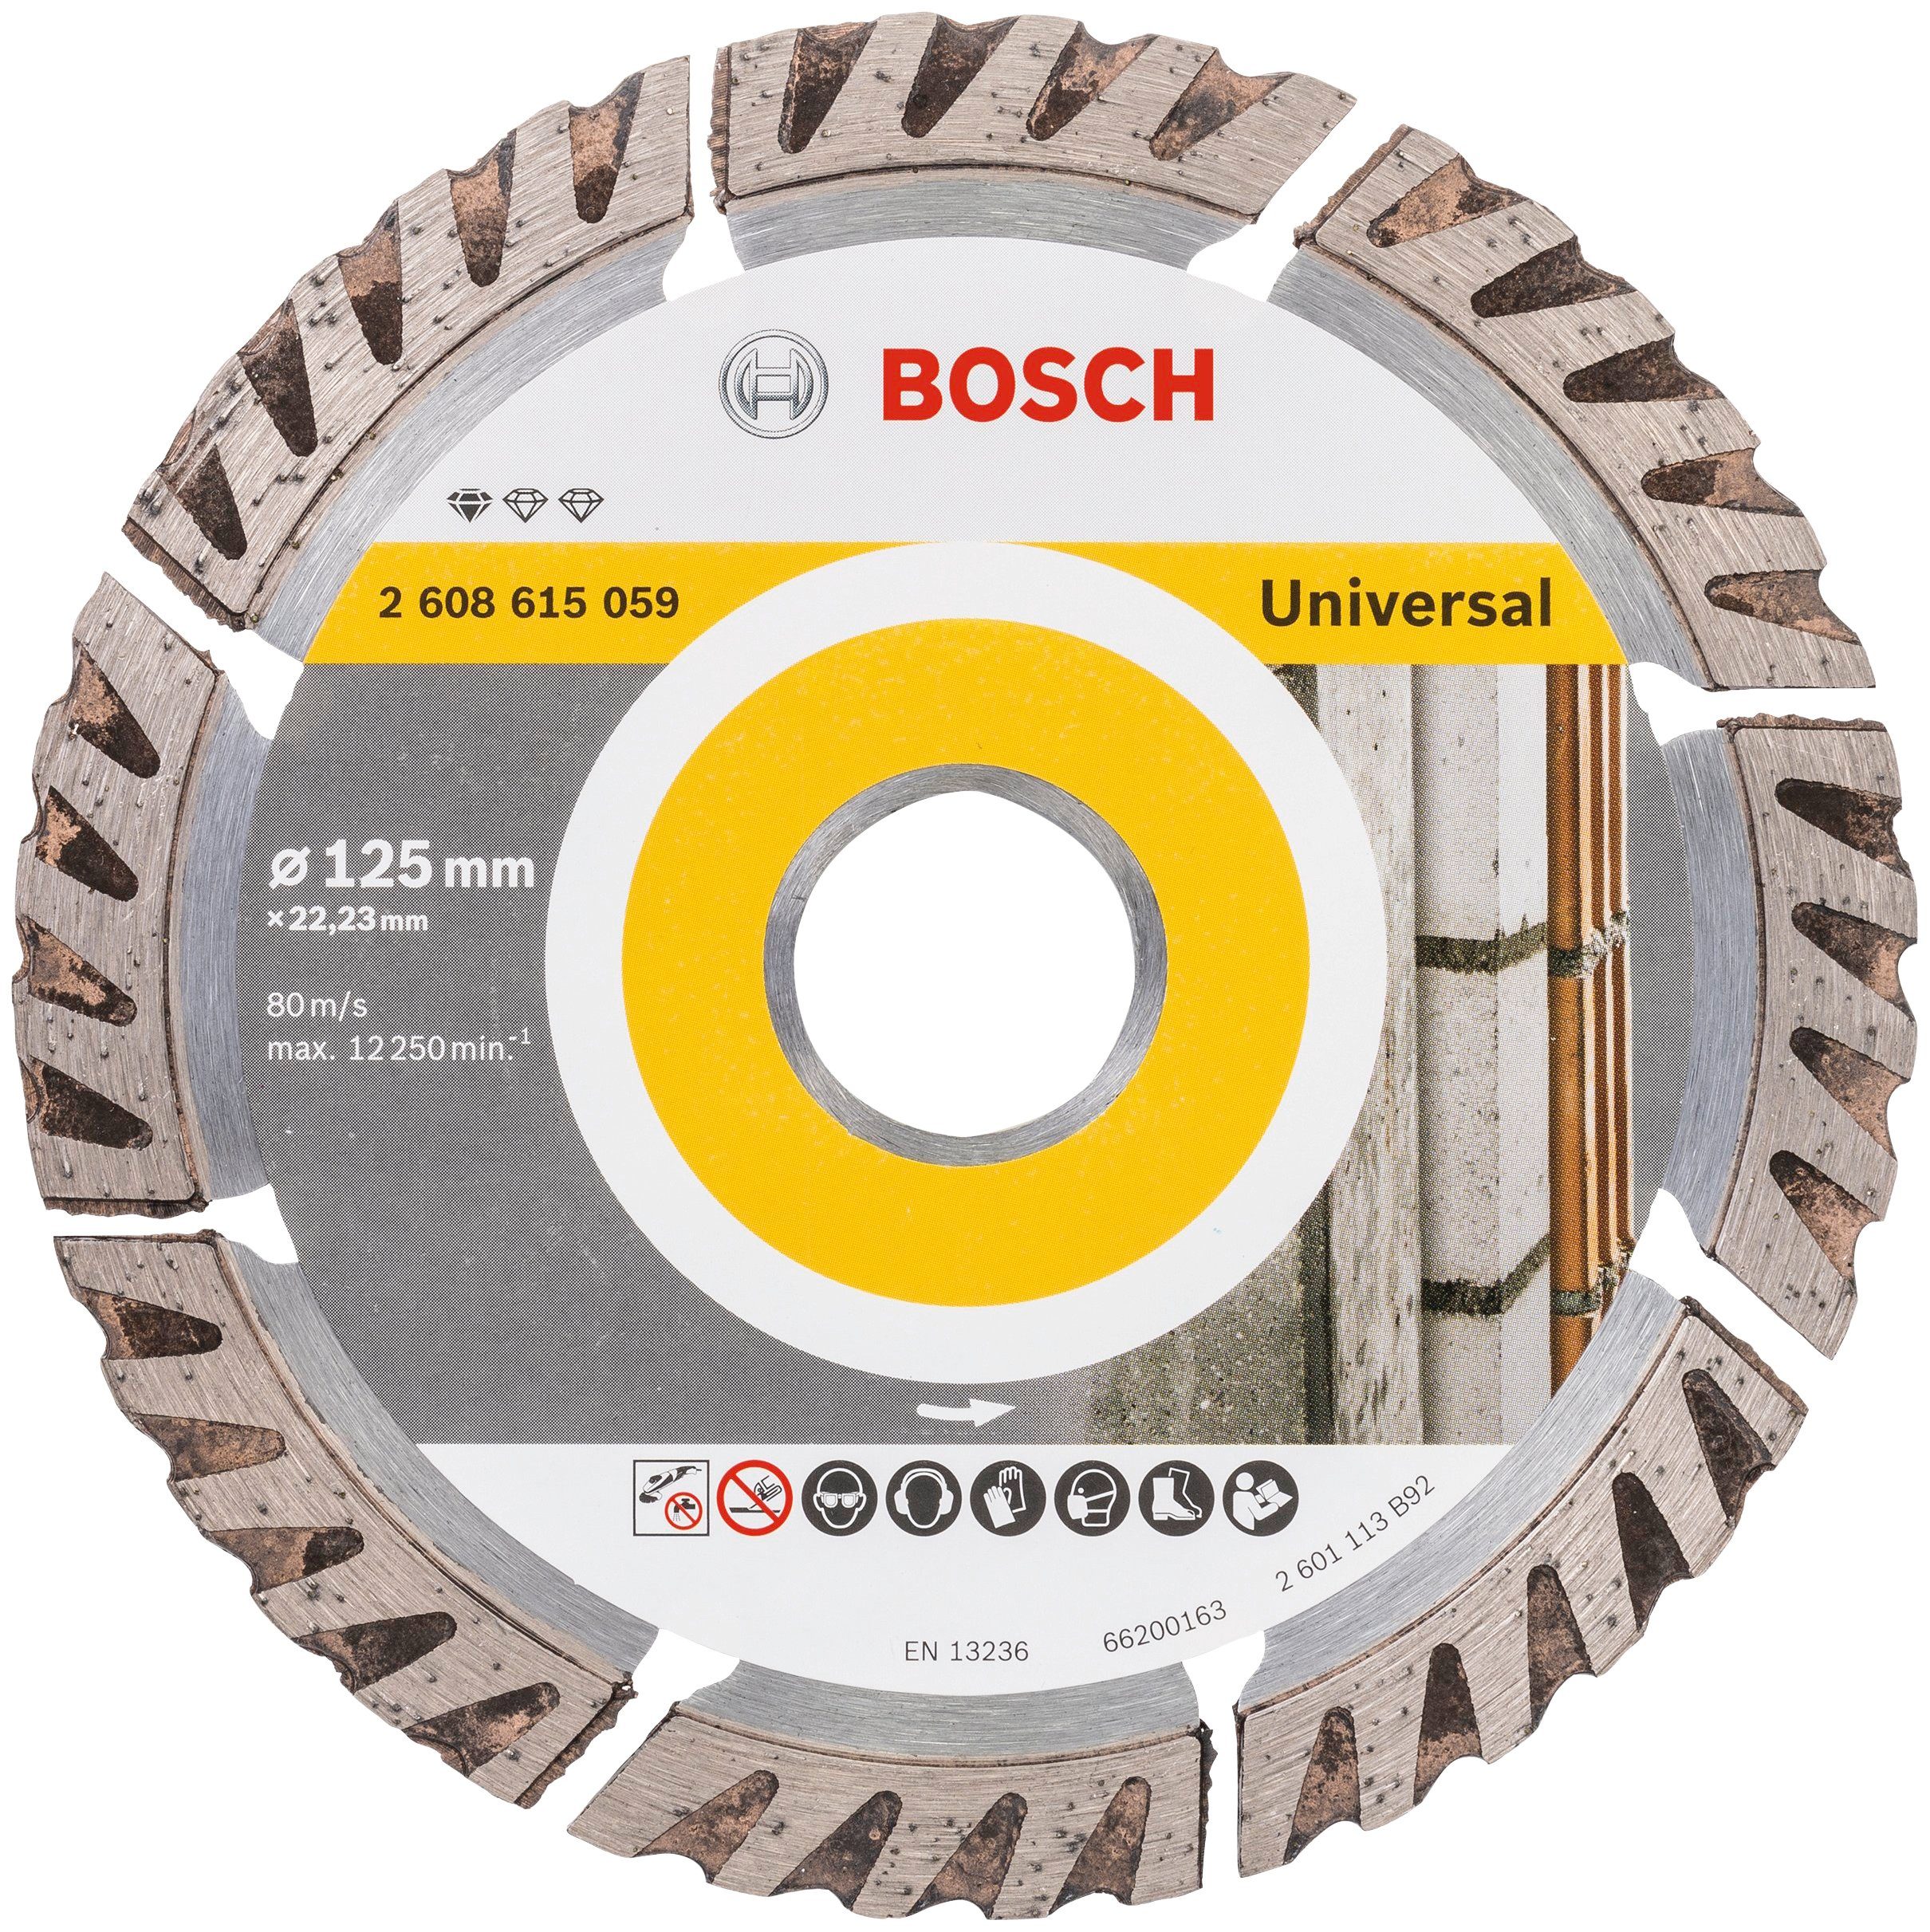 Bosch Professional Trennscheibe Standard for x22,23, Ø mm 125 125 Universal